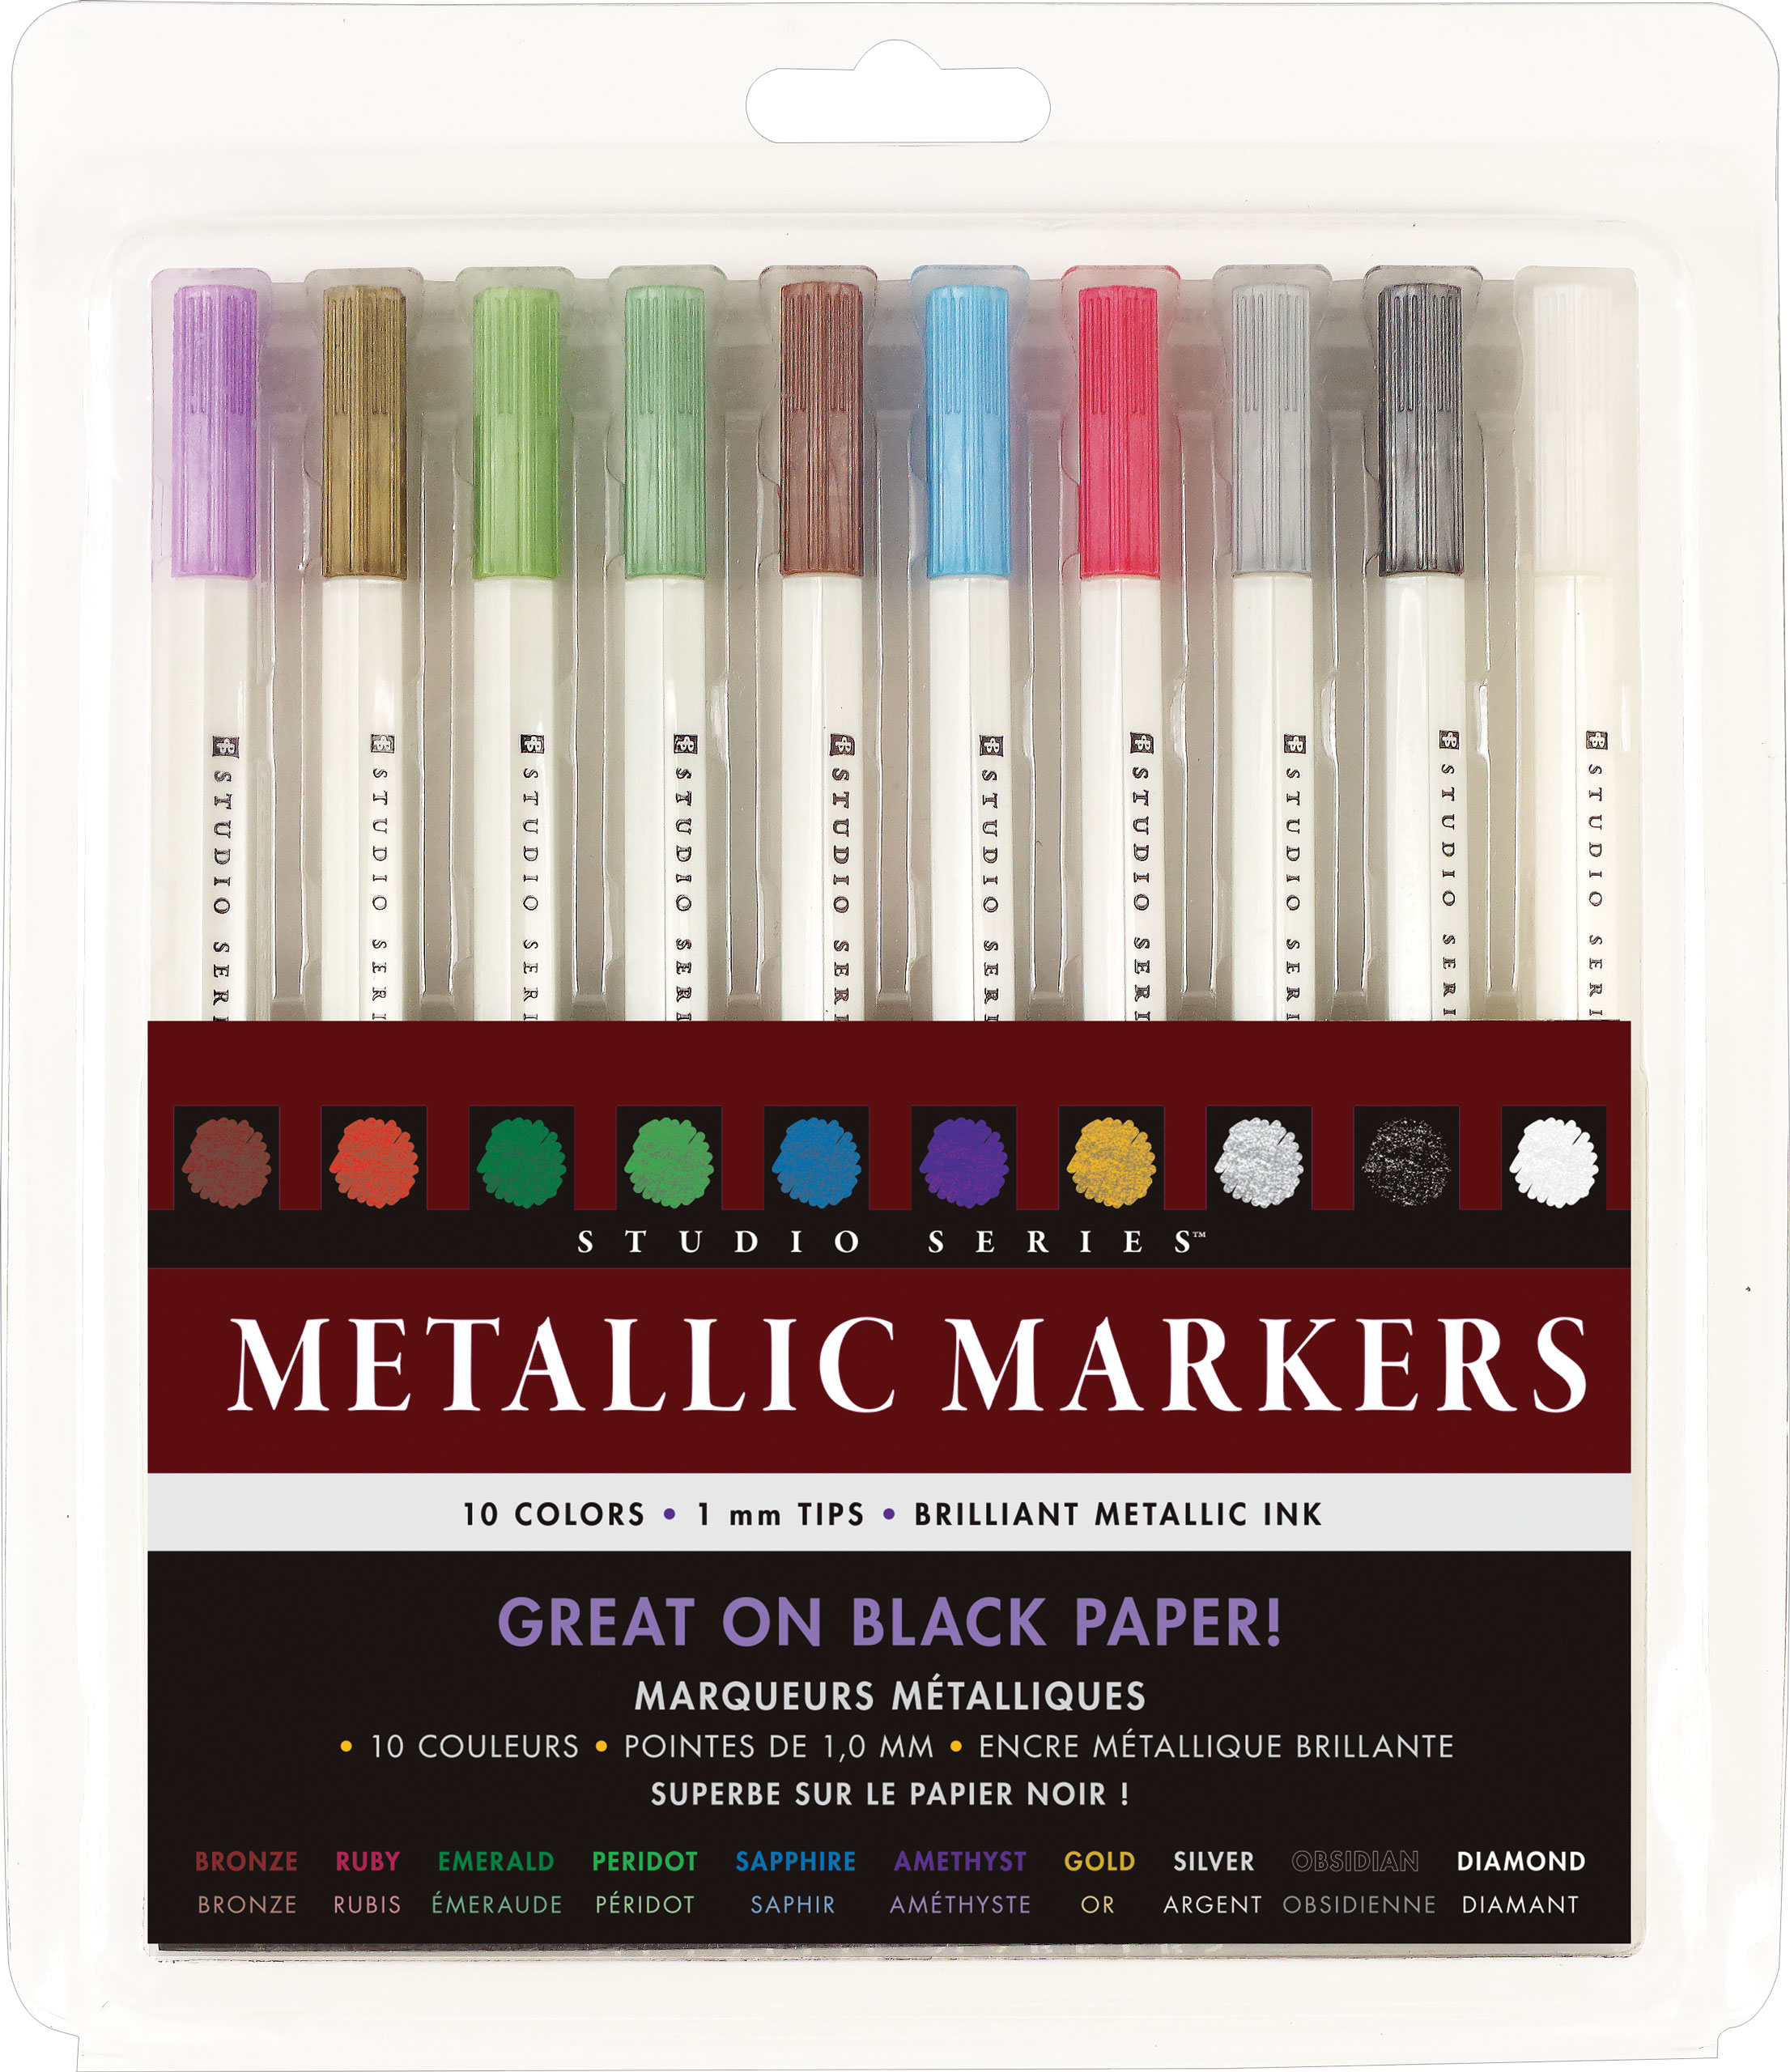 Studio 71 Dual Tip Alcohol Ink Marker Set of 24 Standard Colors